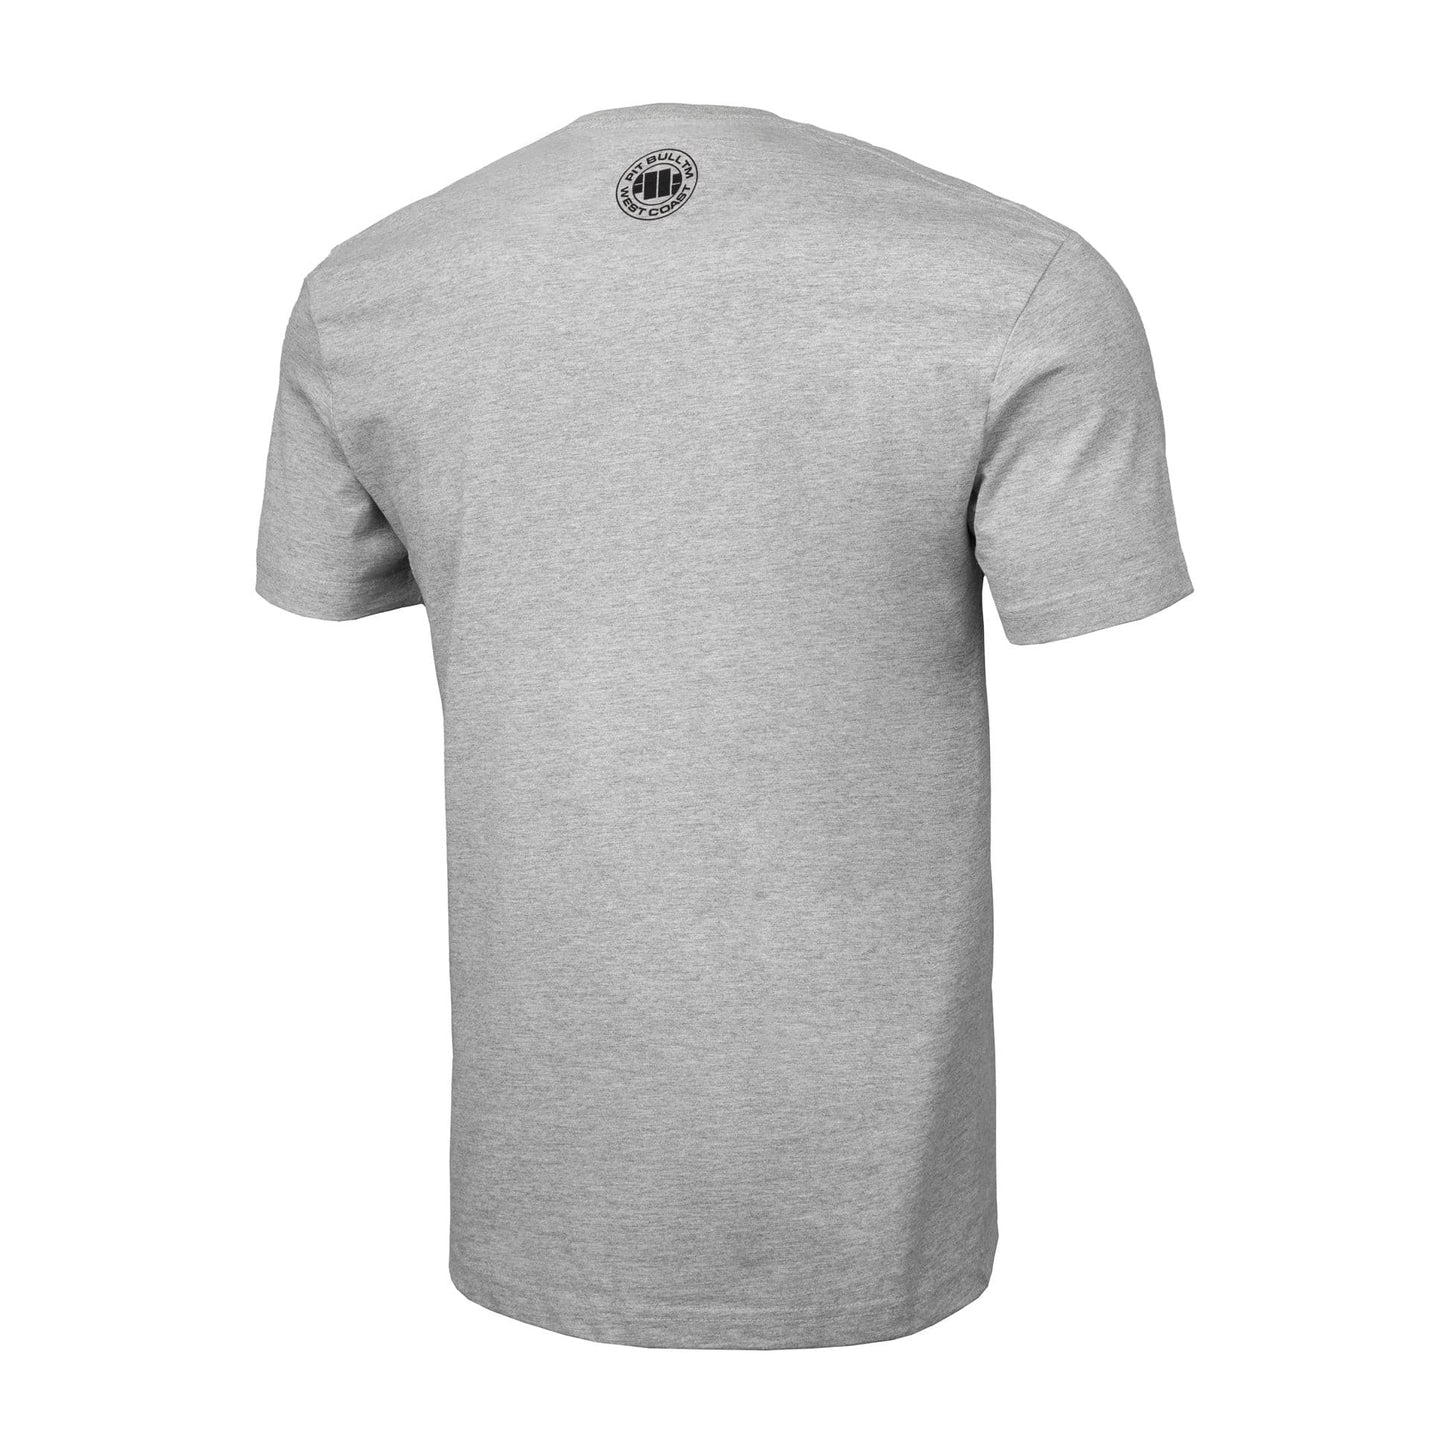 ADCC white short sleeve T-shirt